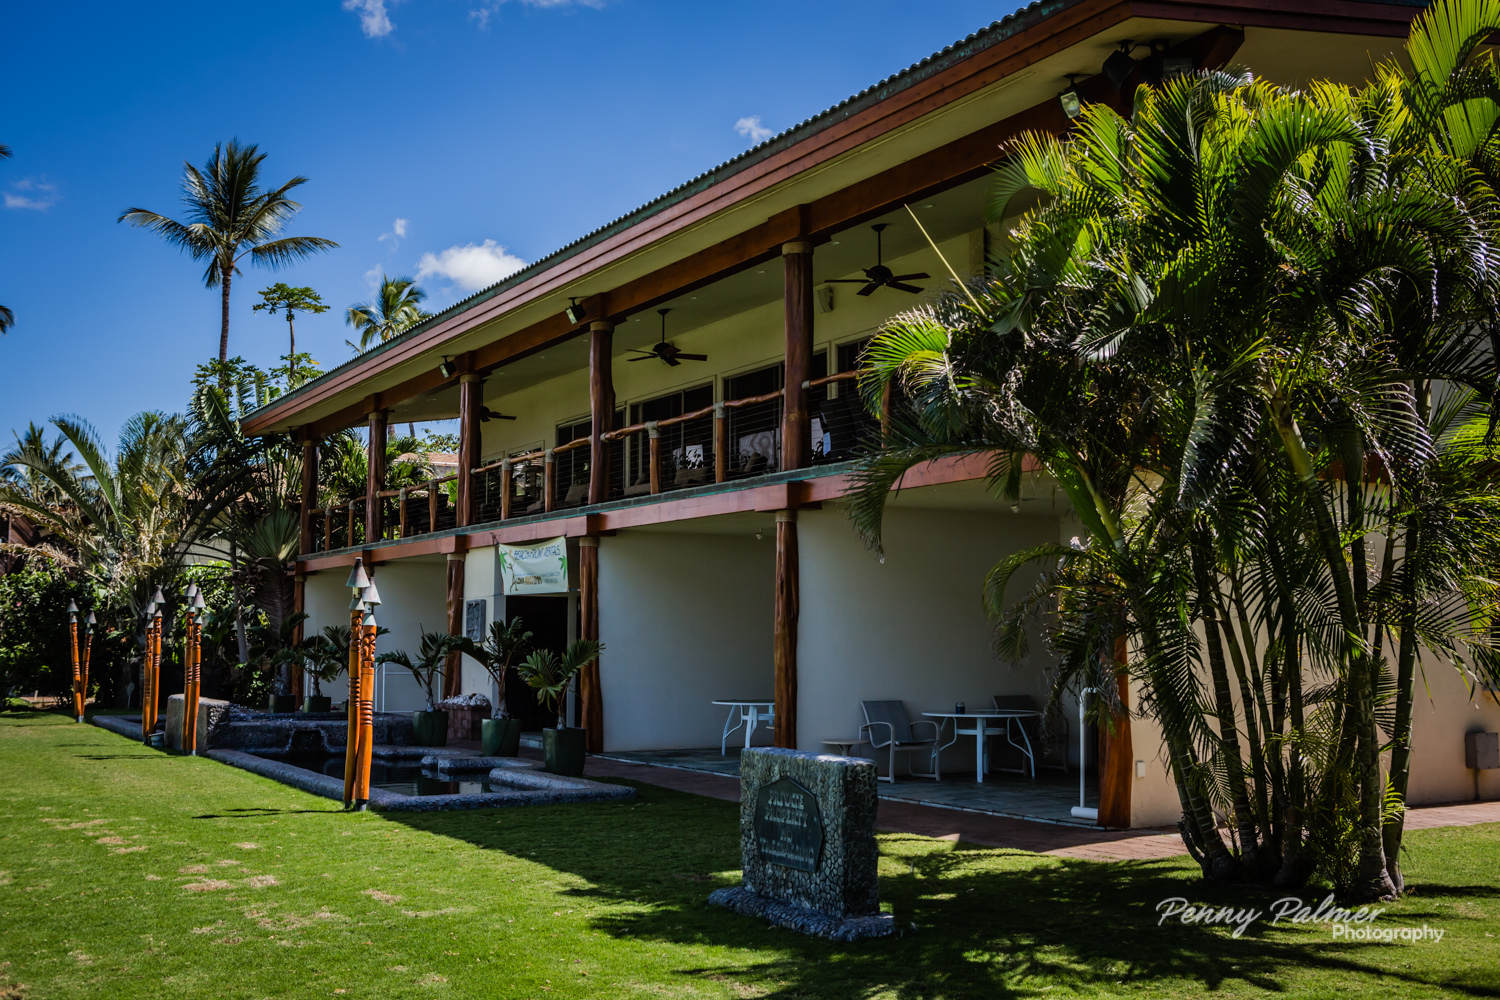 Maui Wedding Venues (15 of 20) - Aloha Maui Dream Weddings